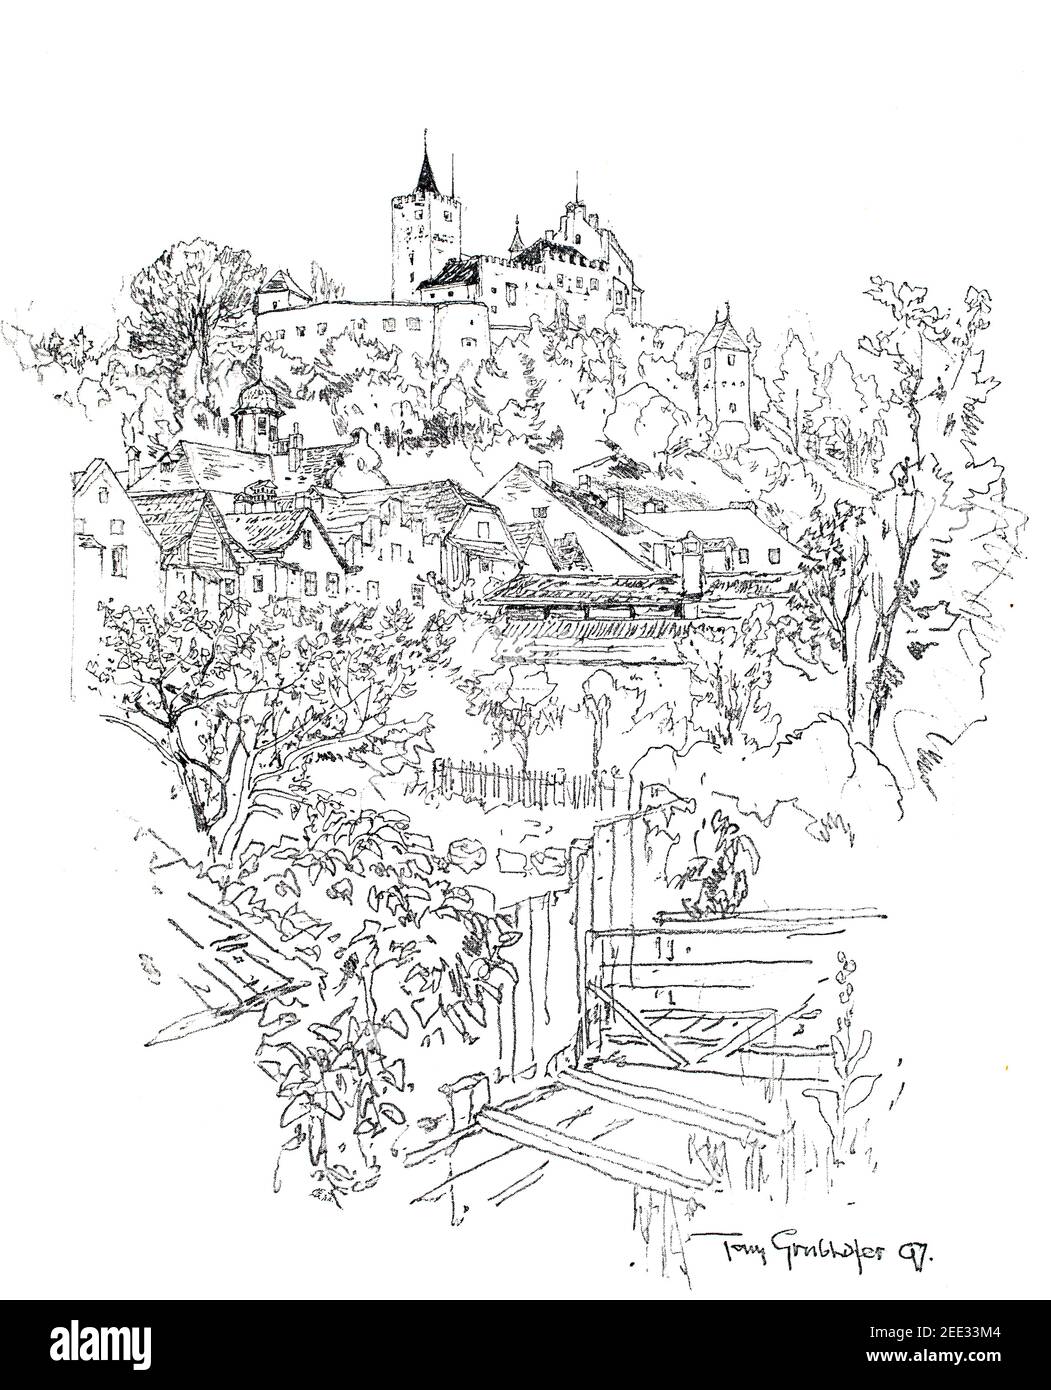 1897, Paysage tyrolien, dessin au crayon de la ville avec le château perché, par Tony Grubhofer, artiste né à Innsbruck, en 1899 le Studio an Illustrated Maga Banque D'Images